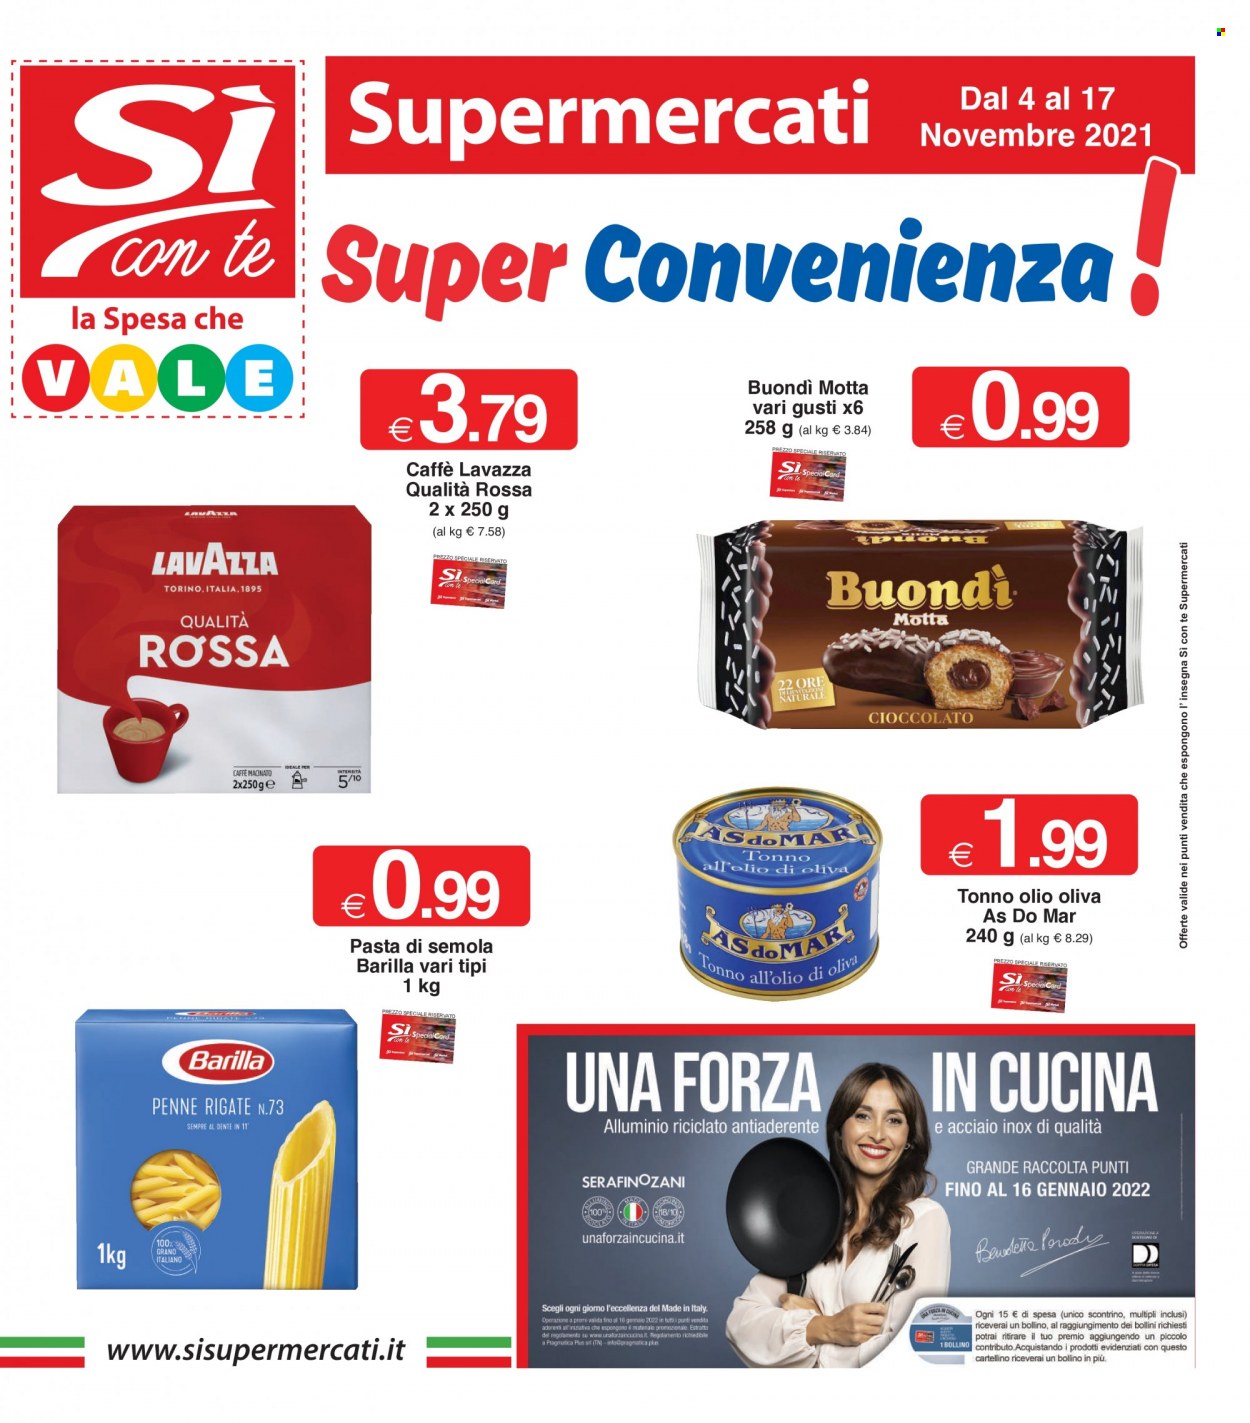 thumbnail - Volantino Si con te Supermercati - 4/11/2021 - 17/11/2021 - Prodotti in offerta - Motta, tonno, Barilla, tonno sott'olio, AsdoMAR, pasta, penne, Lavazza, caffè macinato. Pagina 1.